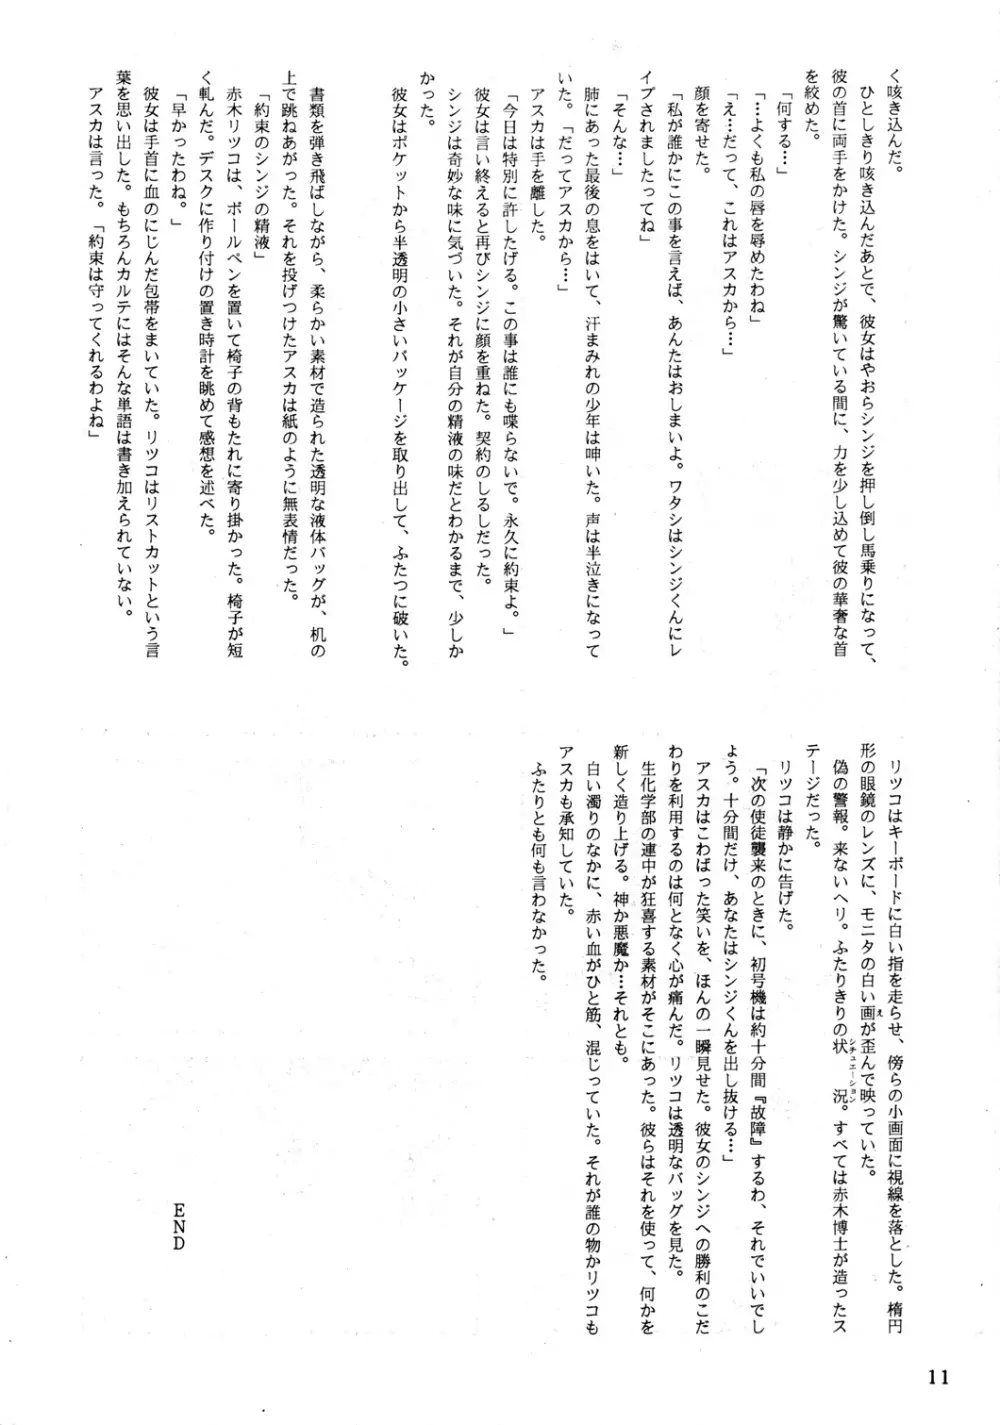 EVA PLUS B WEST JAPAN 仕様 10ページ